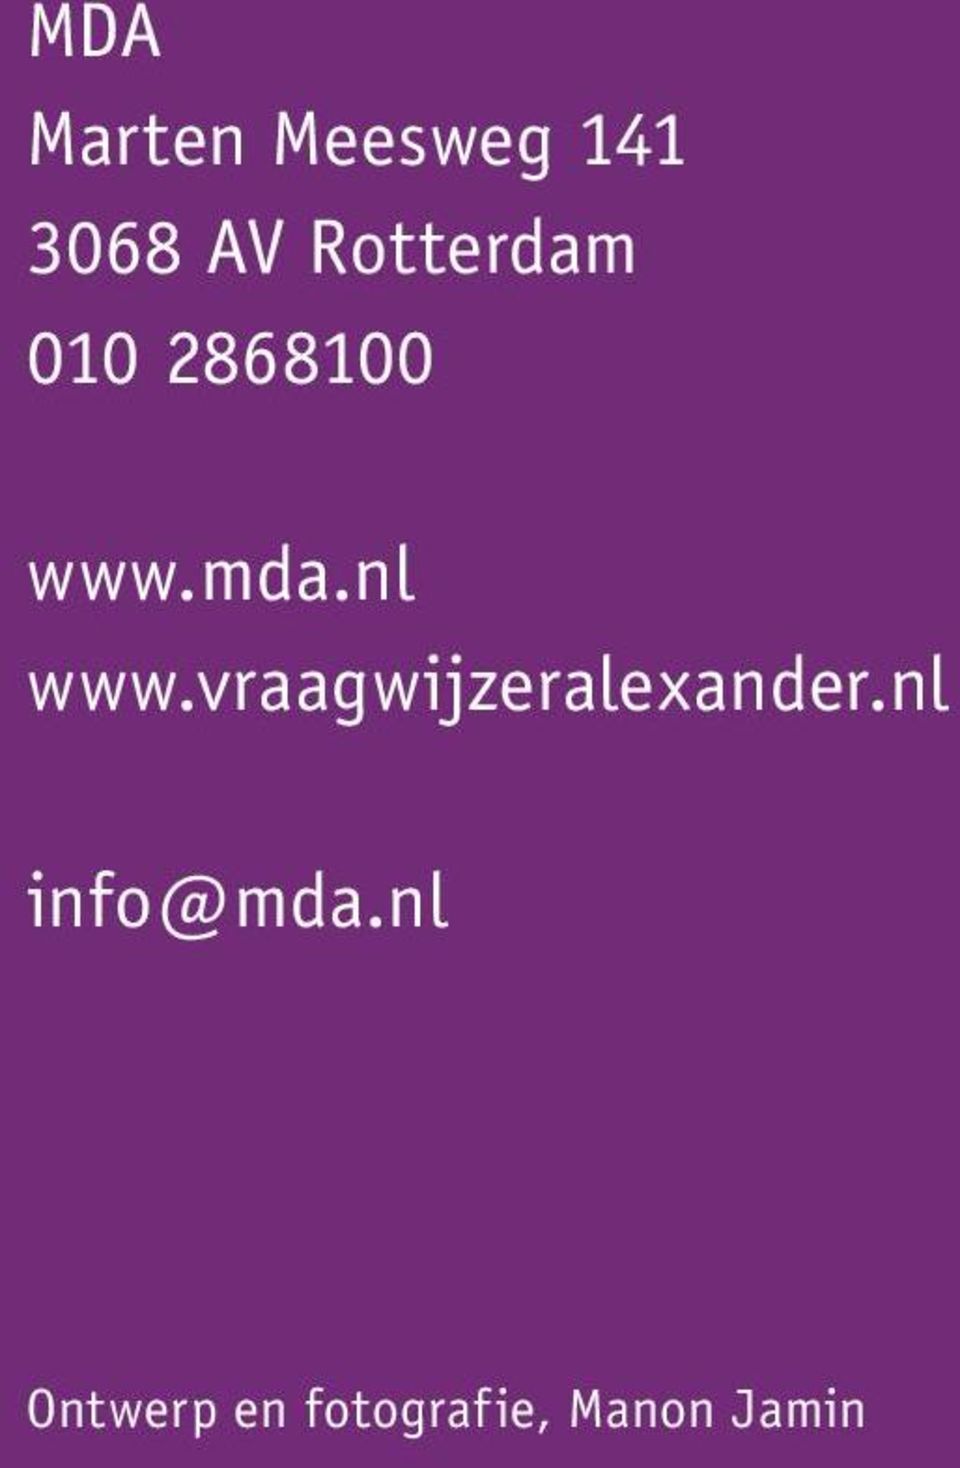 nl www.vraagwijzeralexander.